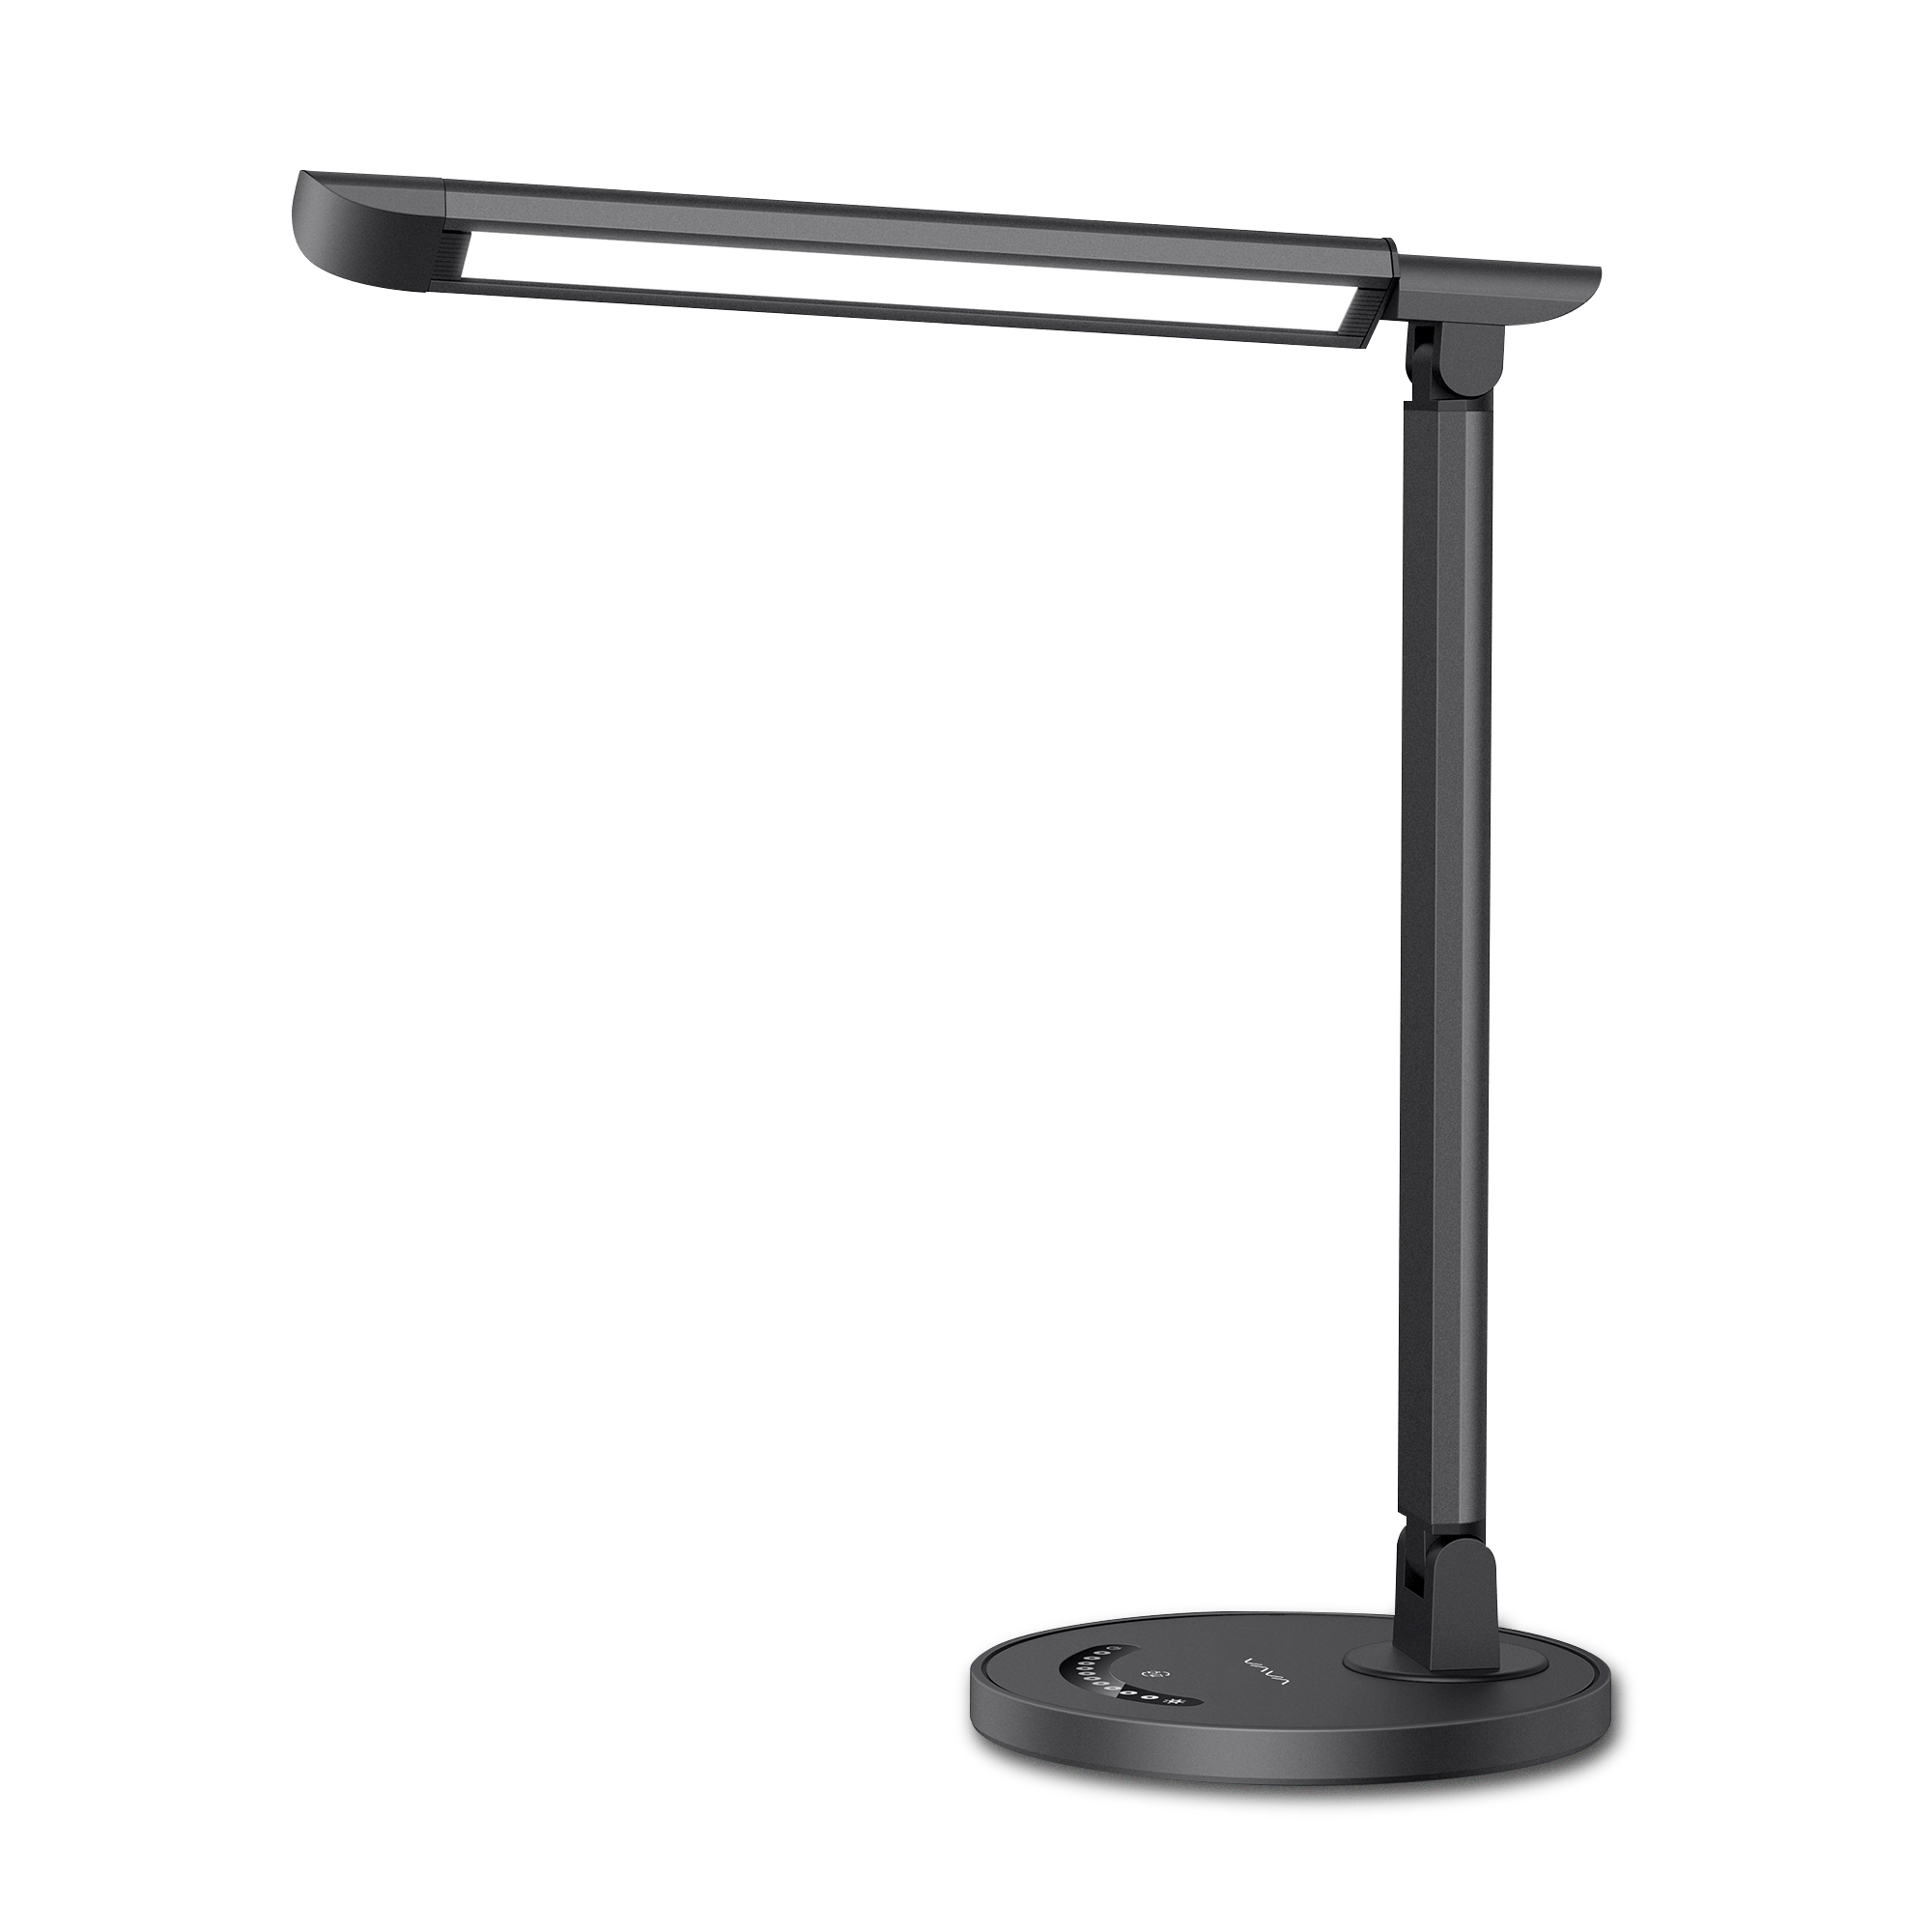 VAVA desk lamp in black, side view